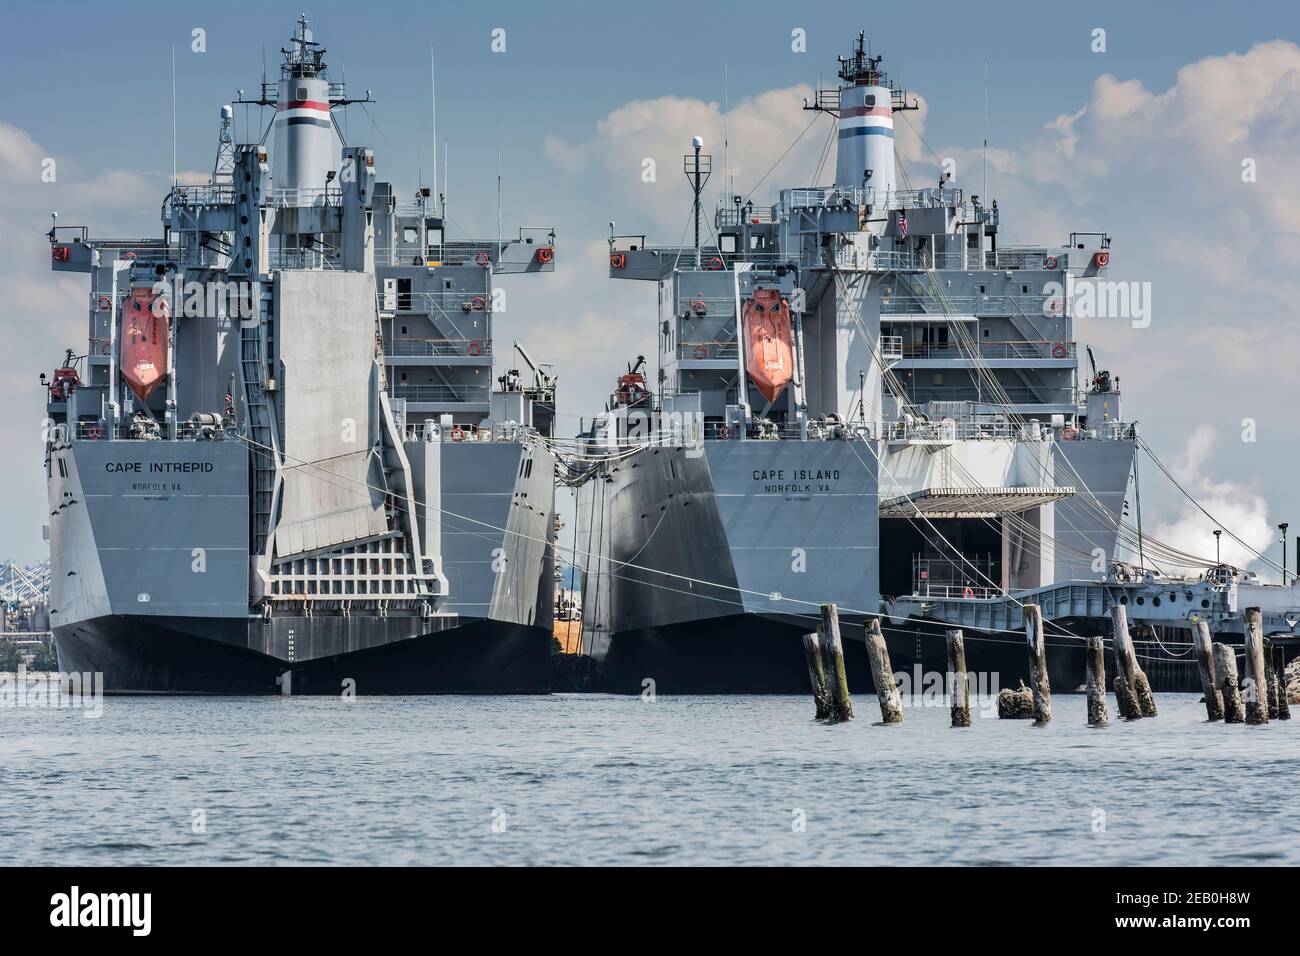 SS Cape Intrepid et SS Cape Island ou le commandement militaire du Seallift à quai de Sperry, baie de commencement, Tacoma, Australie occidentale Banque D'Images